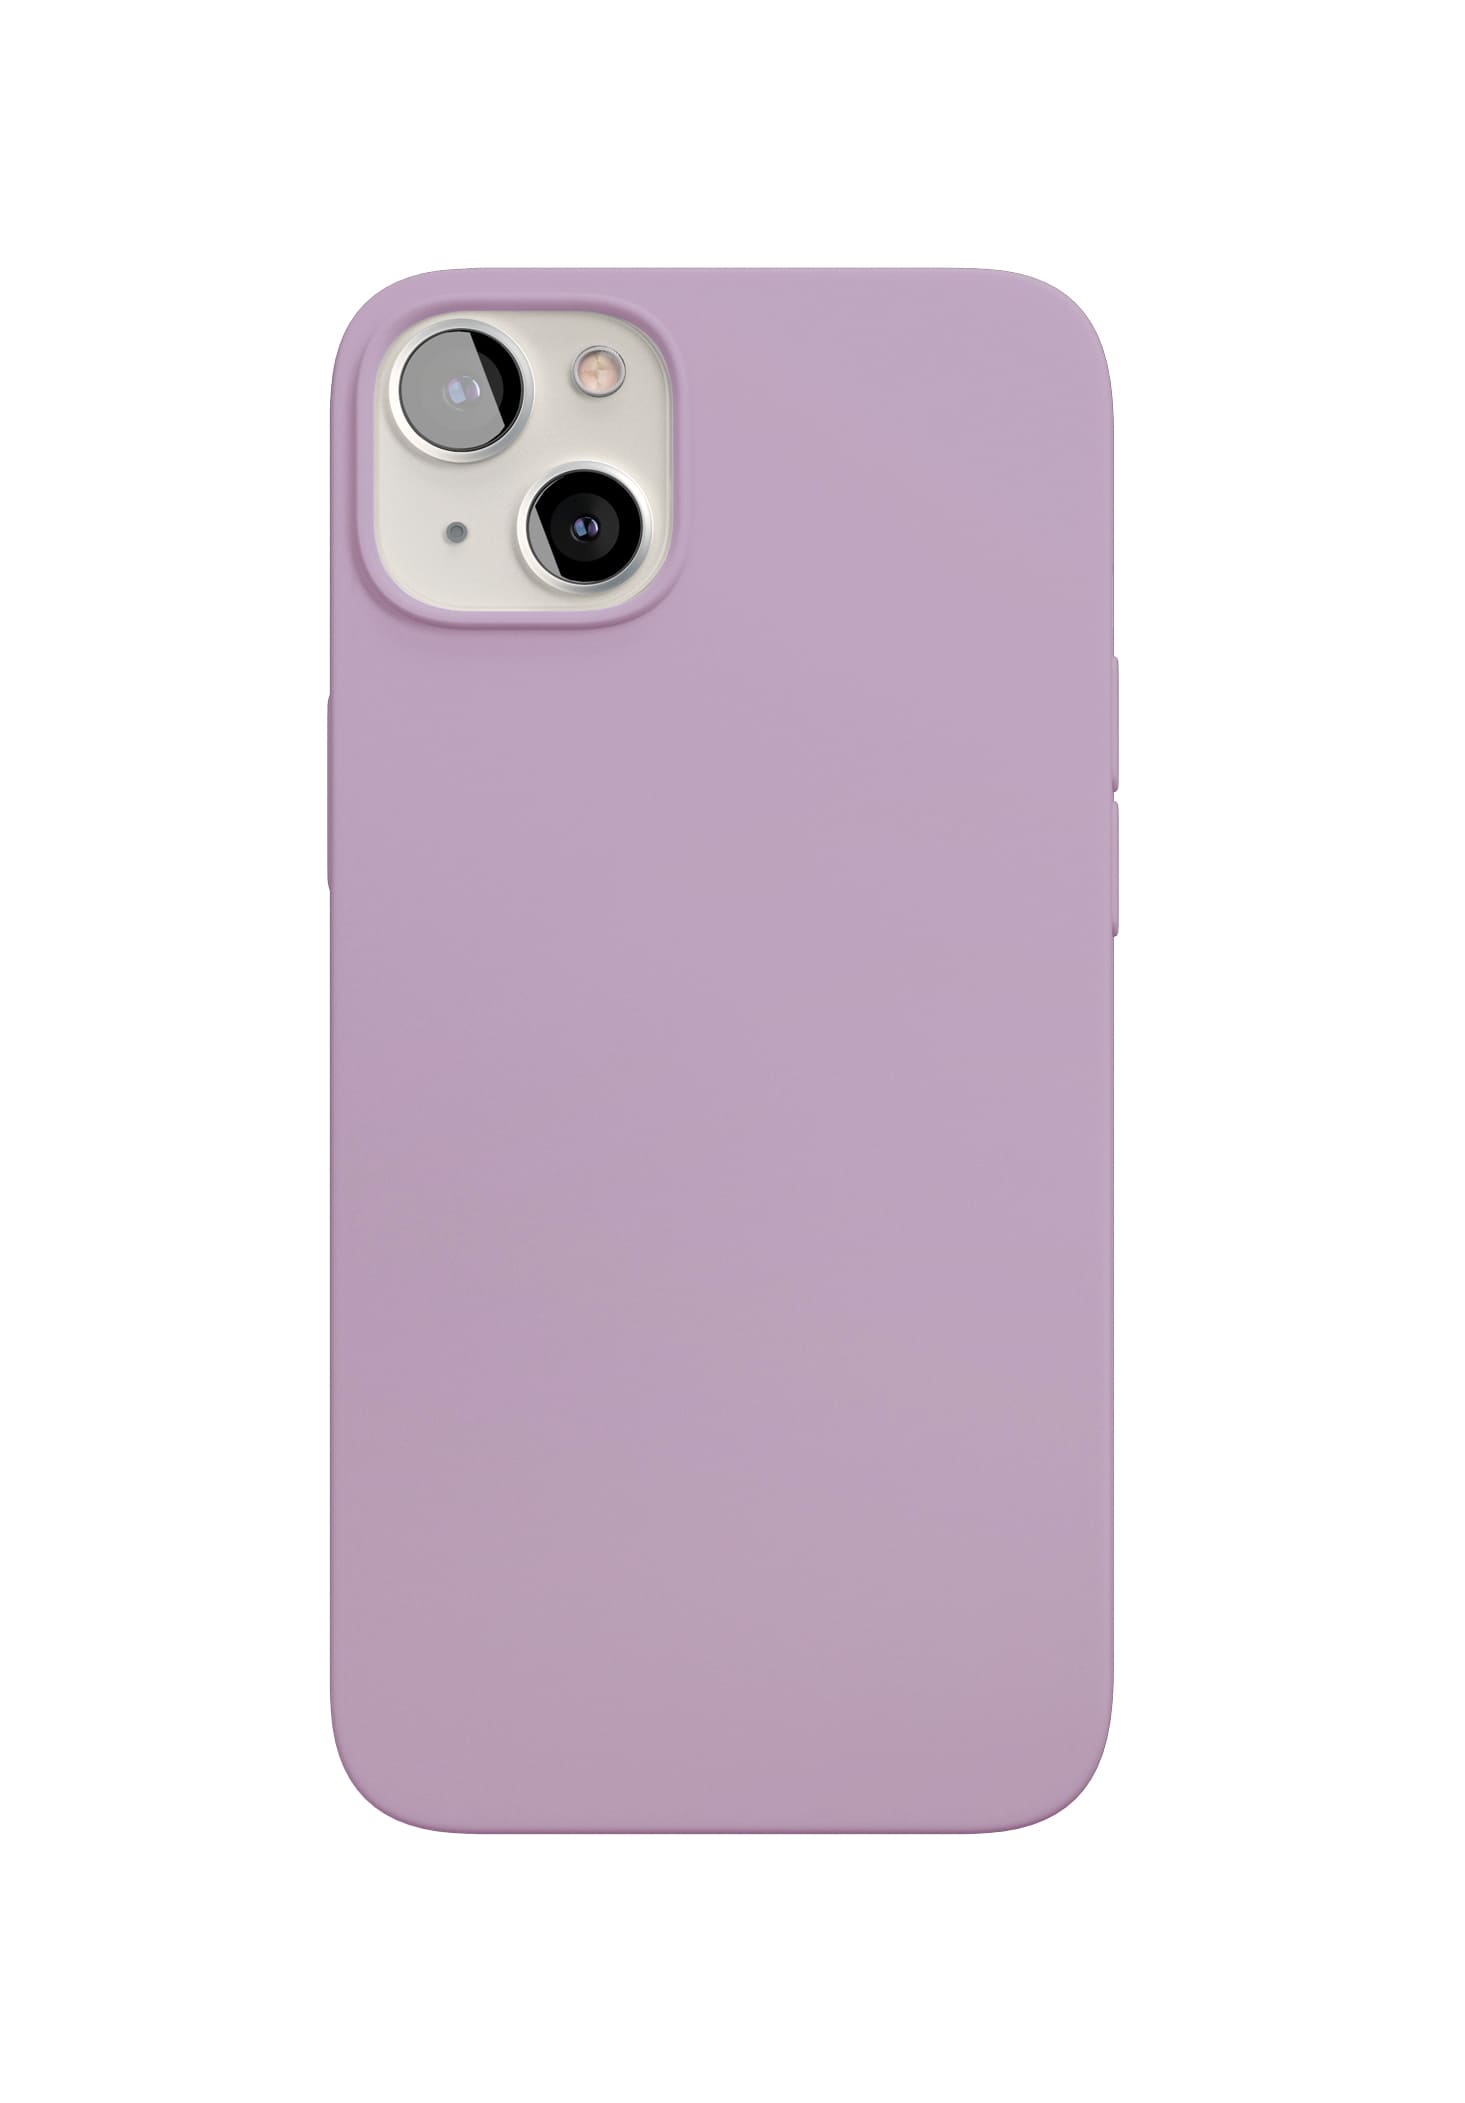 Чехол защитный vlp Silicone case with MagSafe для iPhone 13 mini, фиолетовый